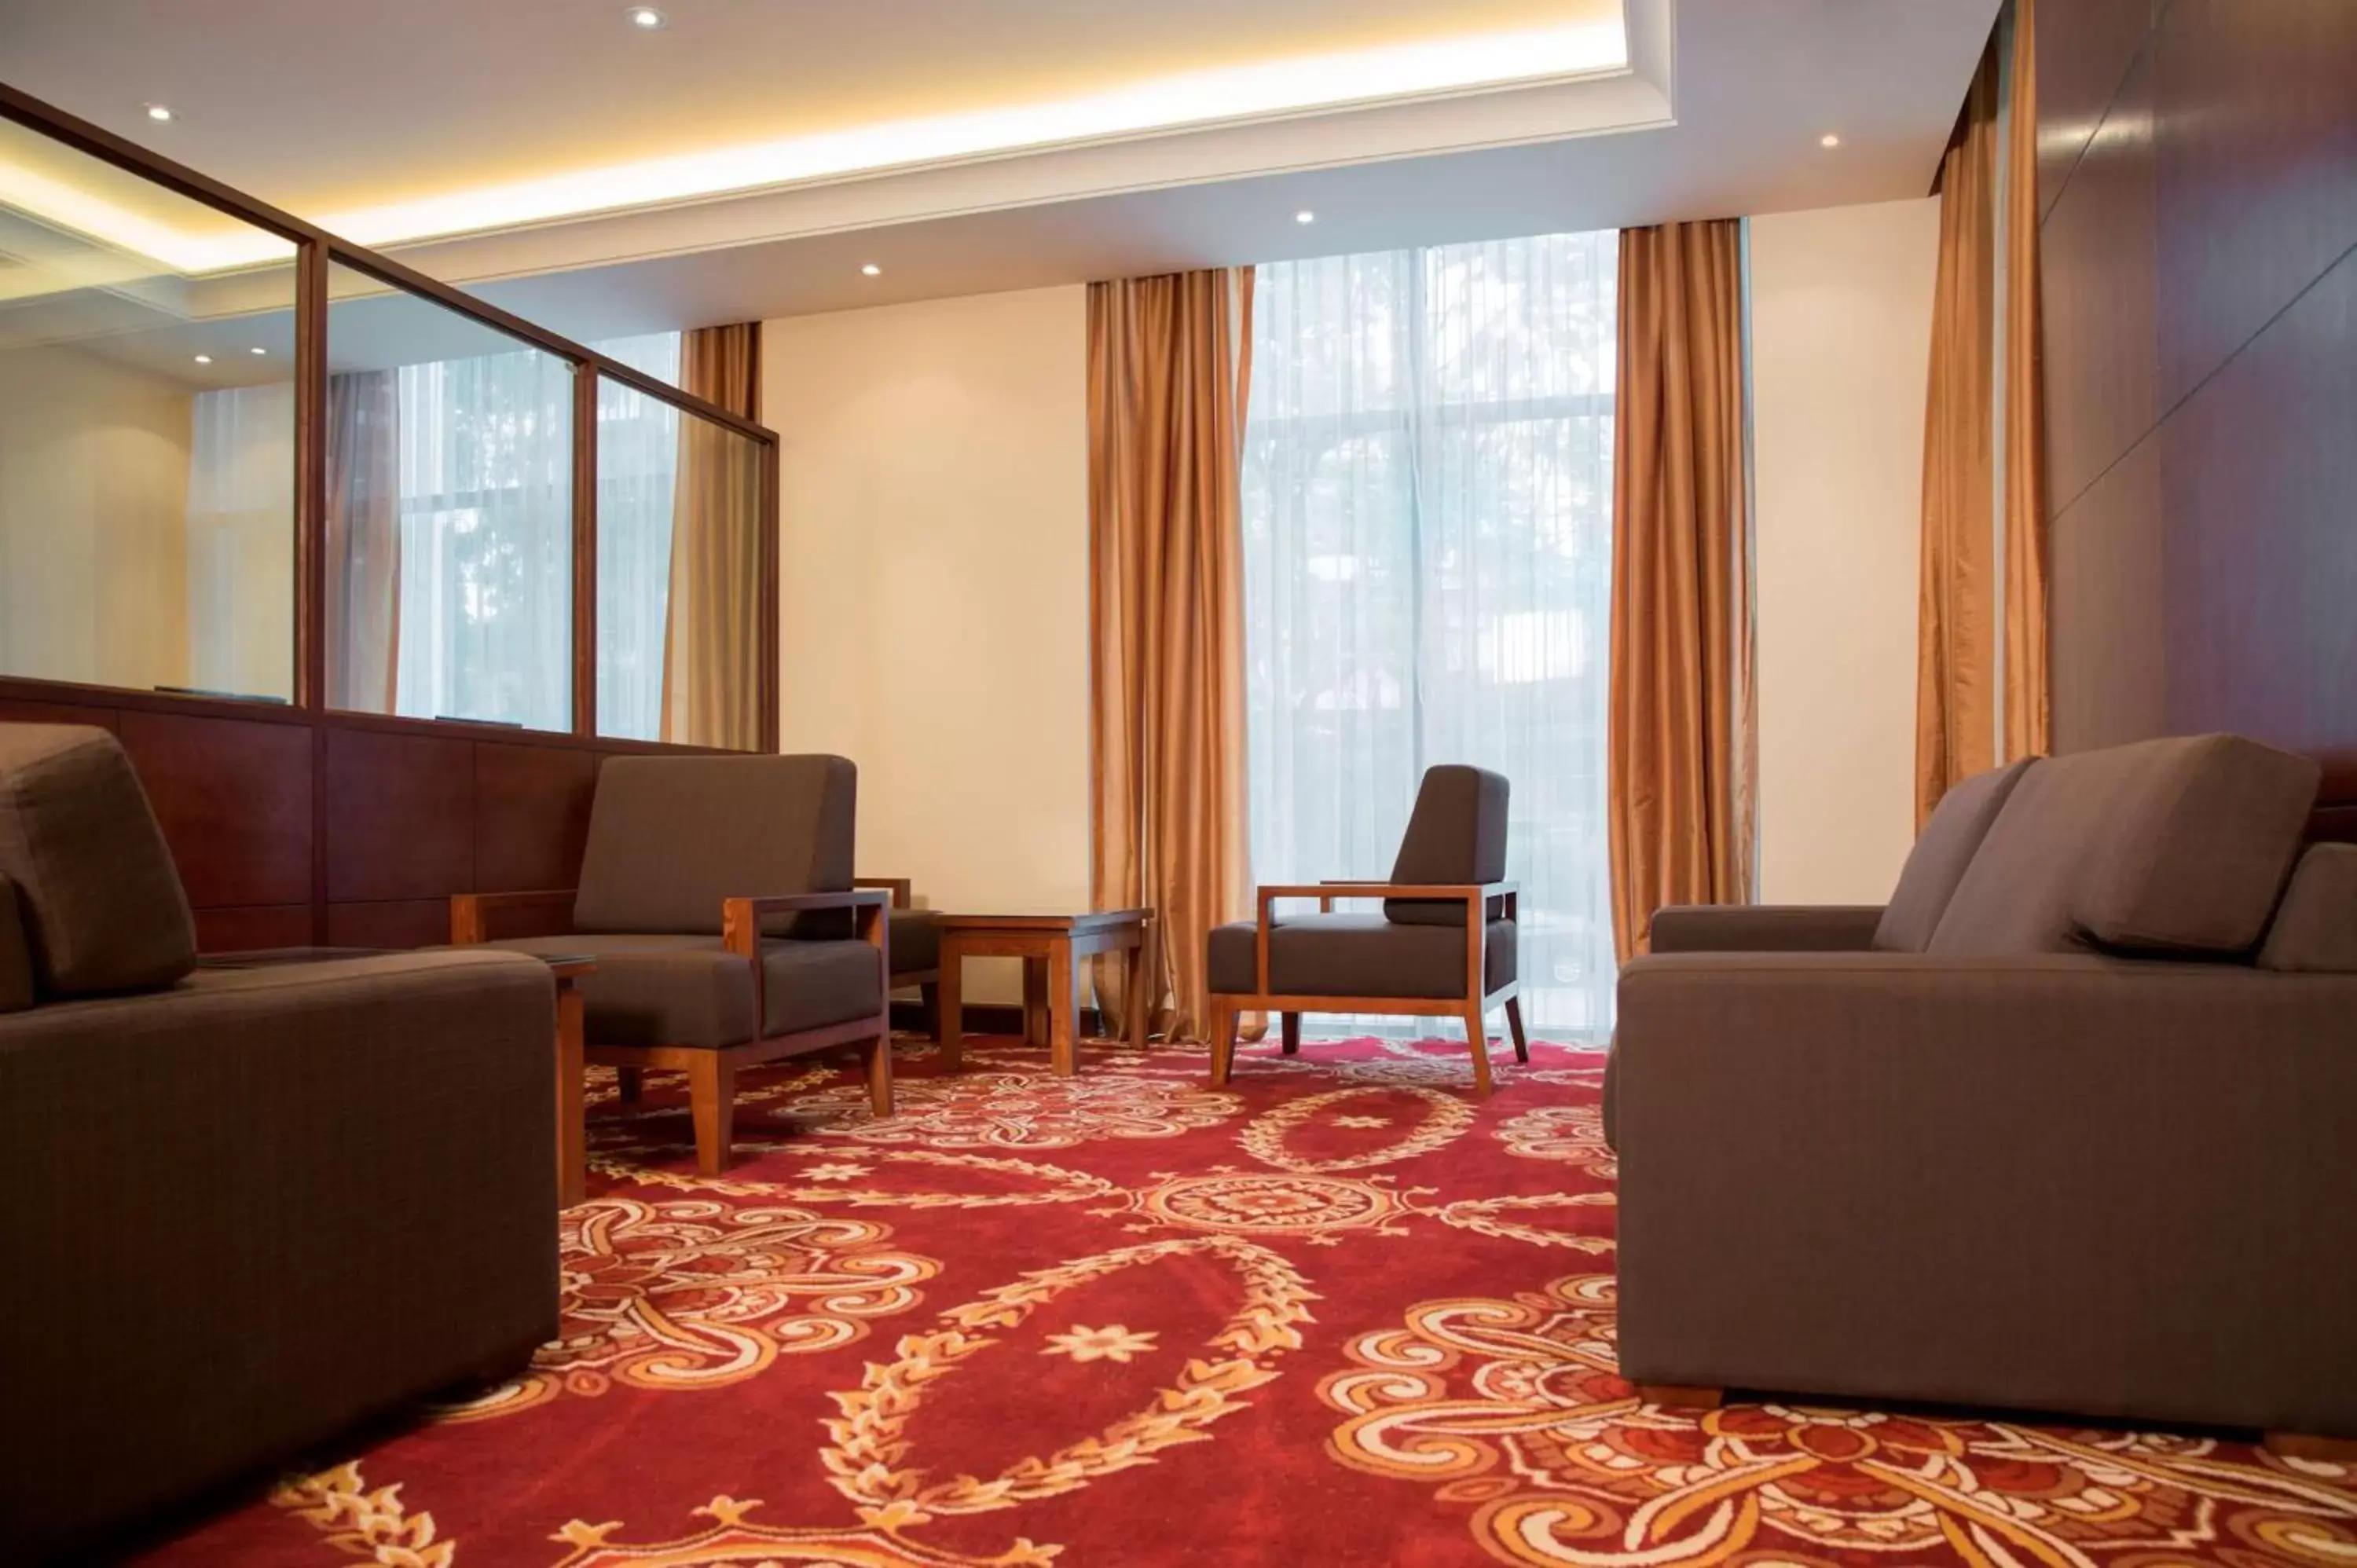 Lobby or reception, Seating Area in Hilton Garden Inn Hanoi